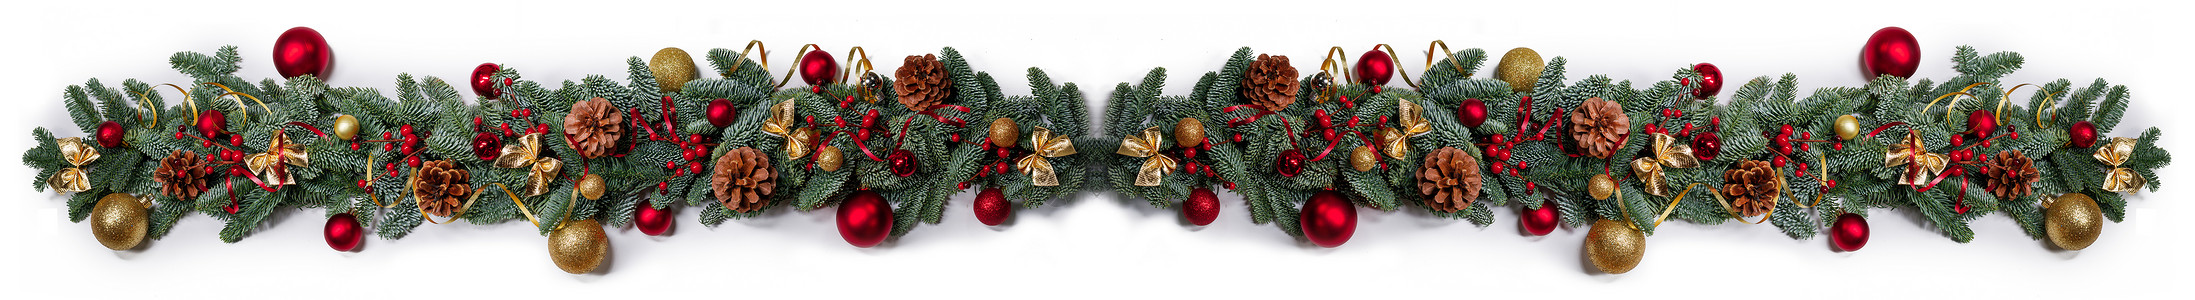 边框线条装饰新年和圣诞节边框设计浆果卡片装饰季节风格边界作品金子花环玩具背景